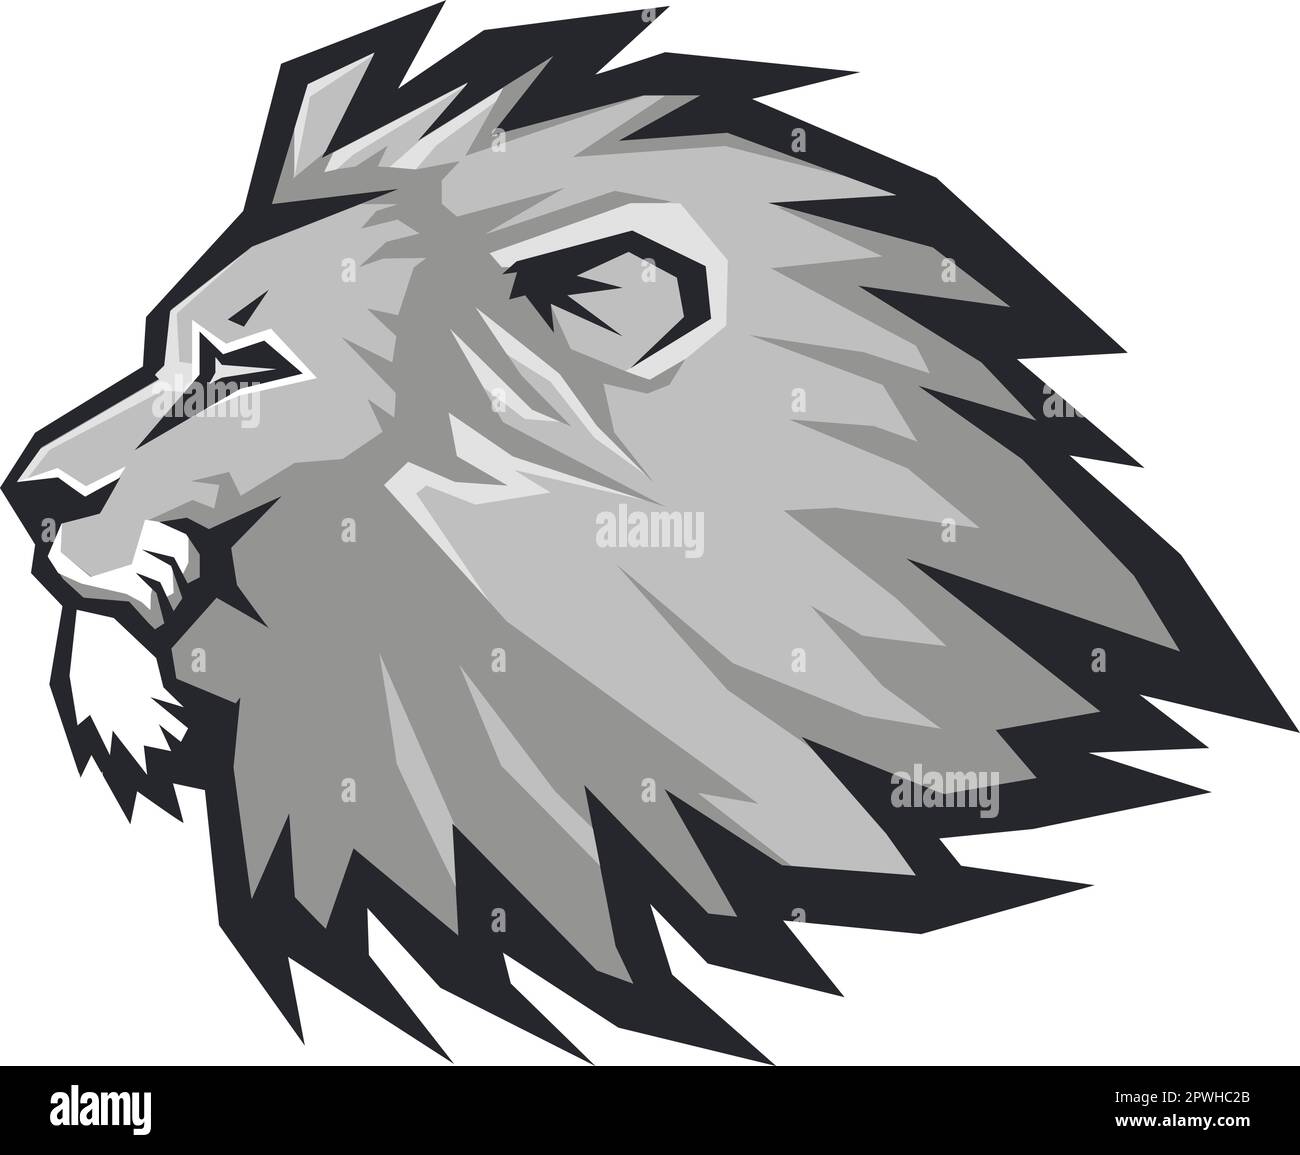 Illustrazione vettore Lion Head. Colore e bianco e nero Illustrazione Vettoriale